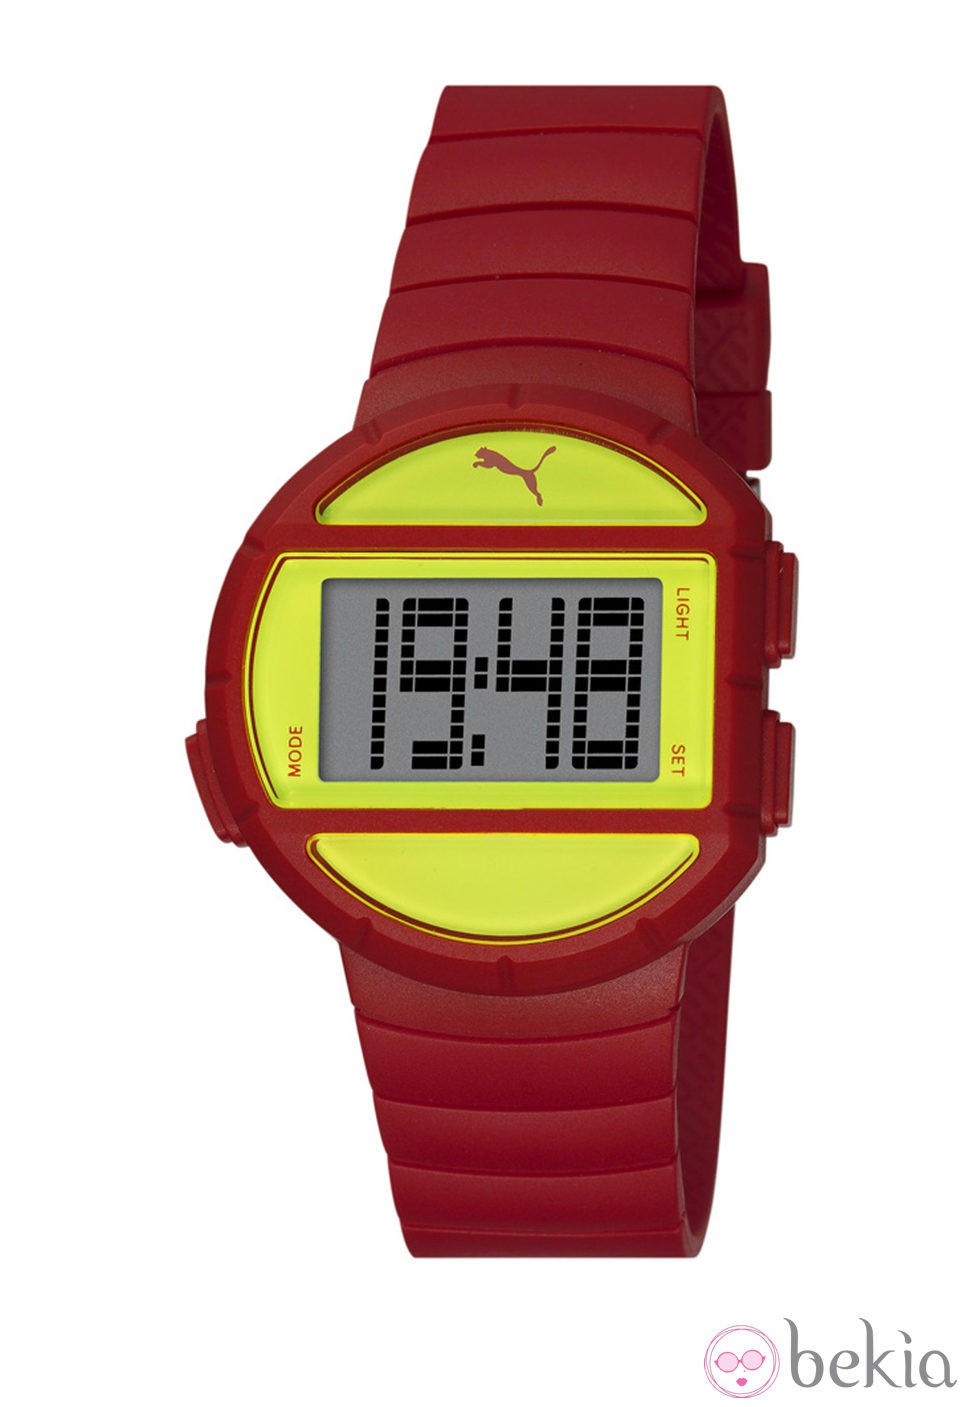 Reloj deportivo 'Half Time' de la firma Puma en color rojo y amarillo